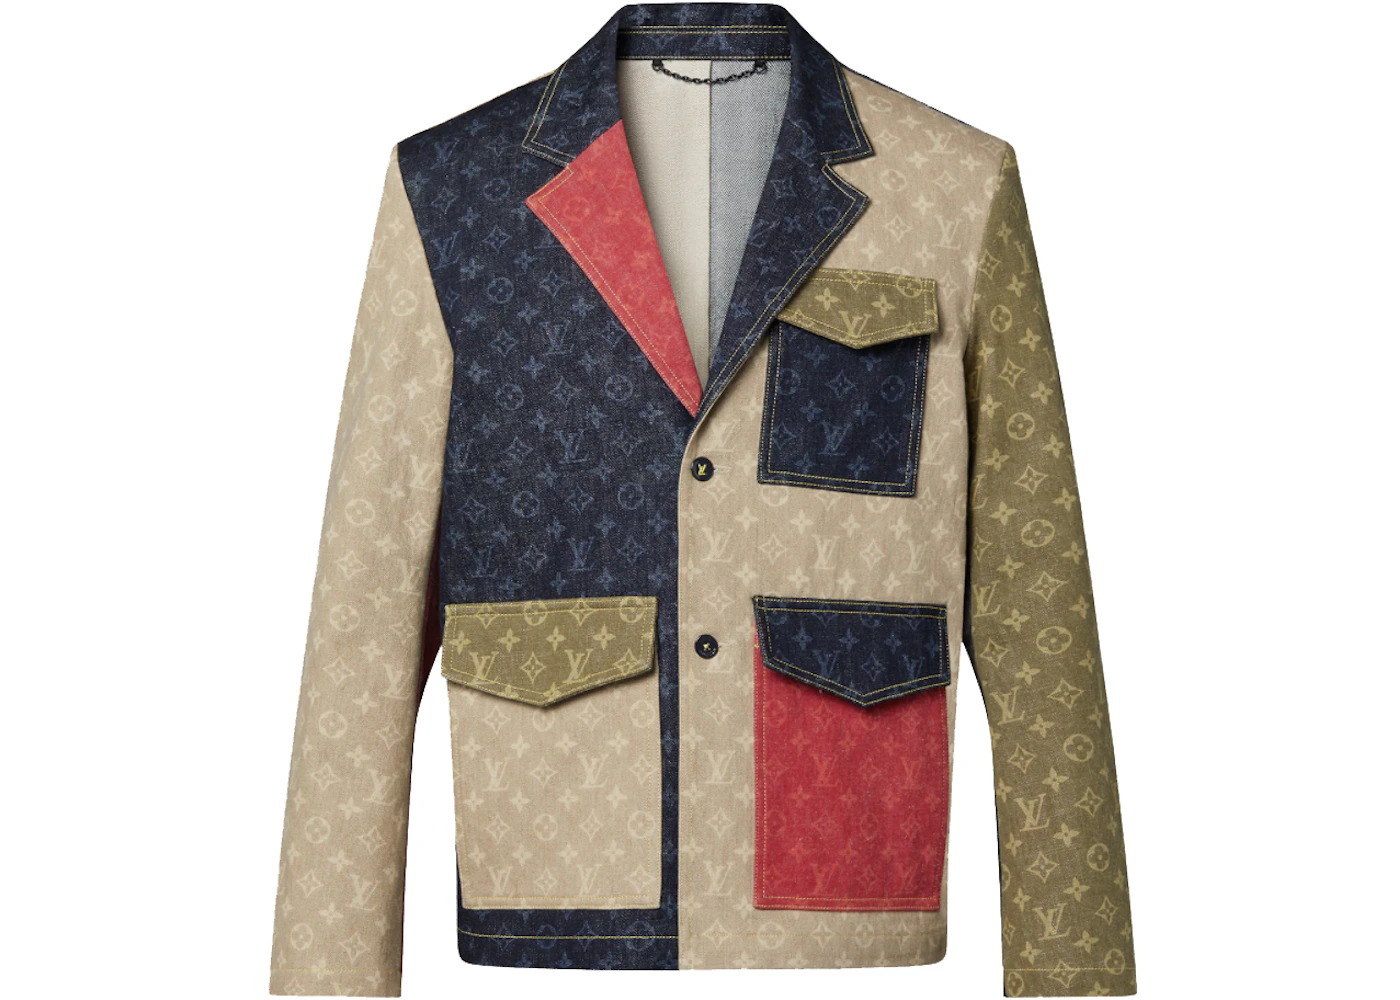 Louis Vuitton x Nigo Monogram Colorblock Tailored Denim Jacket Indigo Men's  - FW21 - GB